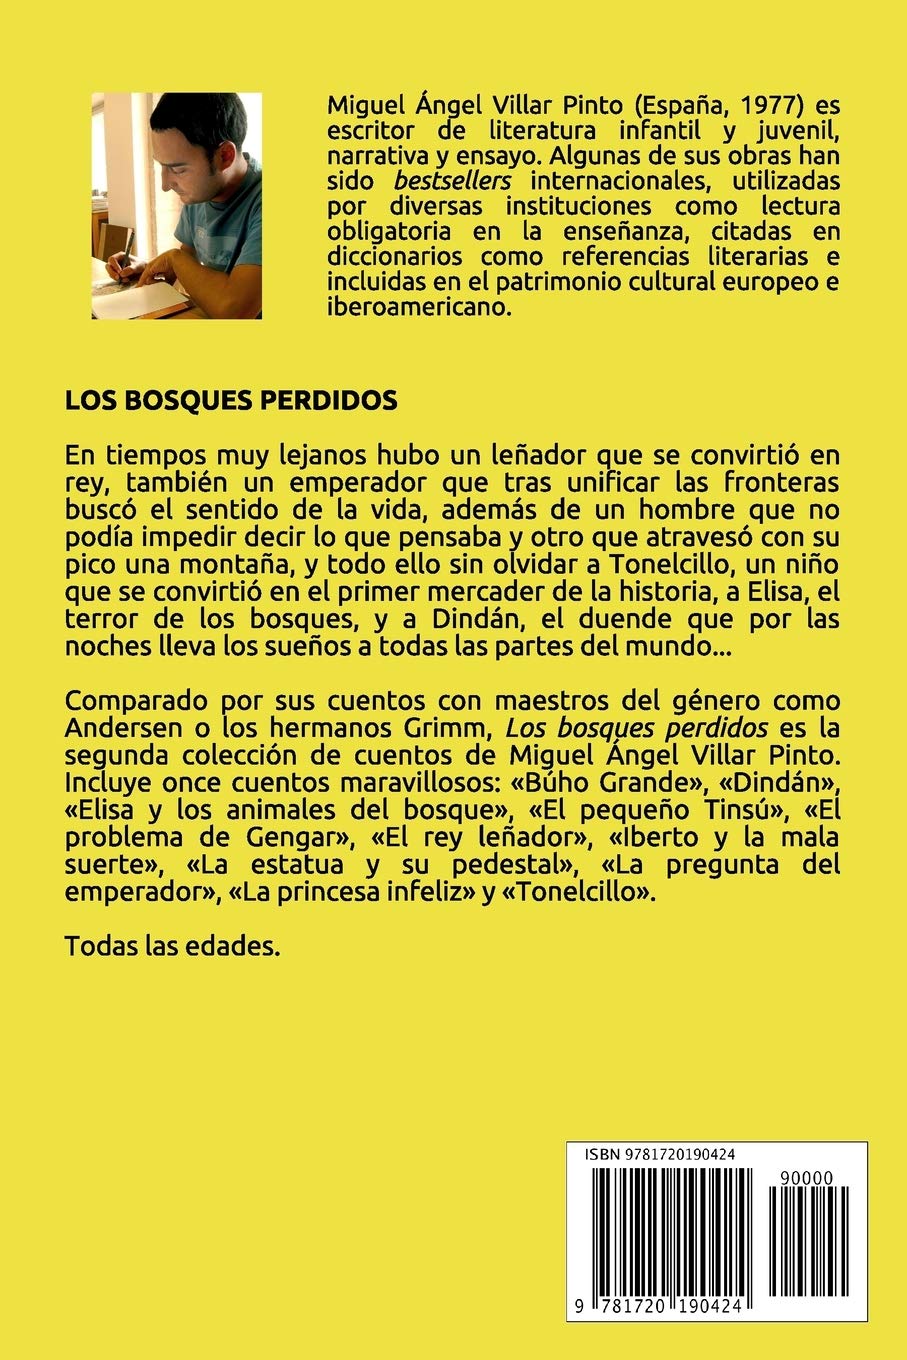 Los bosques perdidos (Cuentos Maravillosos) (Spanish Edition)